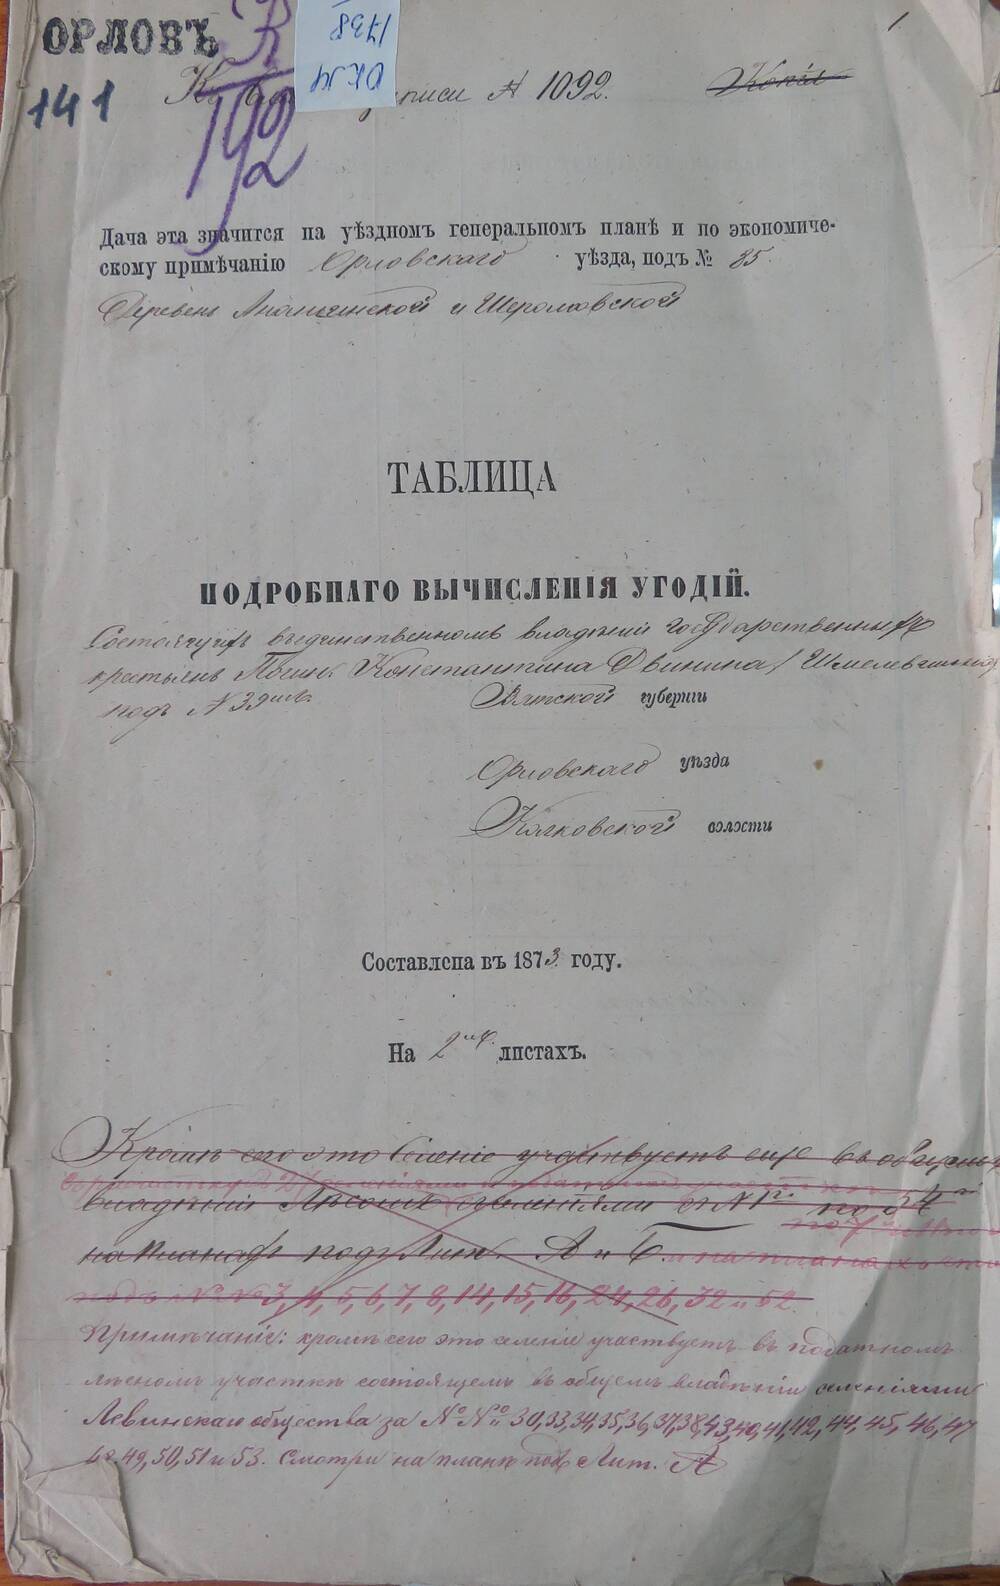 Таблица подробного вычисления угодий  к записи № 1092 Вятской губернии, Орловского уезда, Колковской волости.
Составлена в 1873 году.